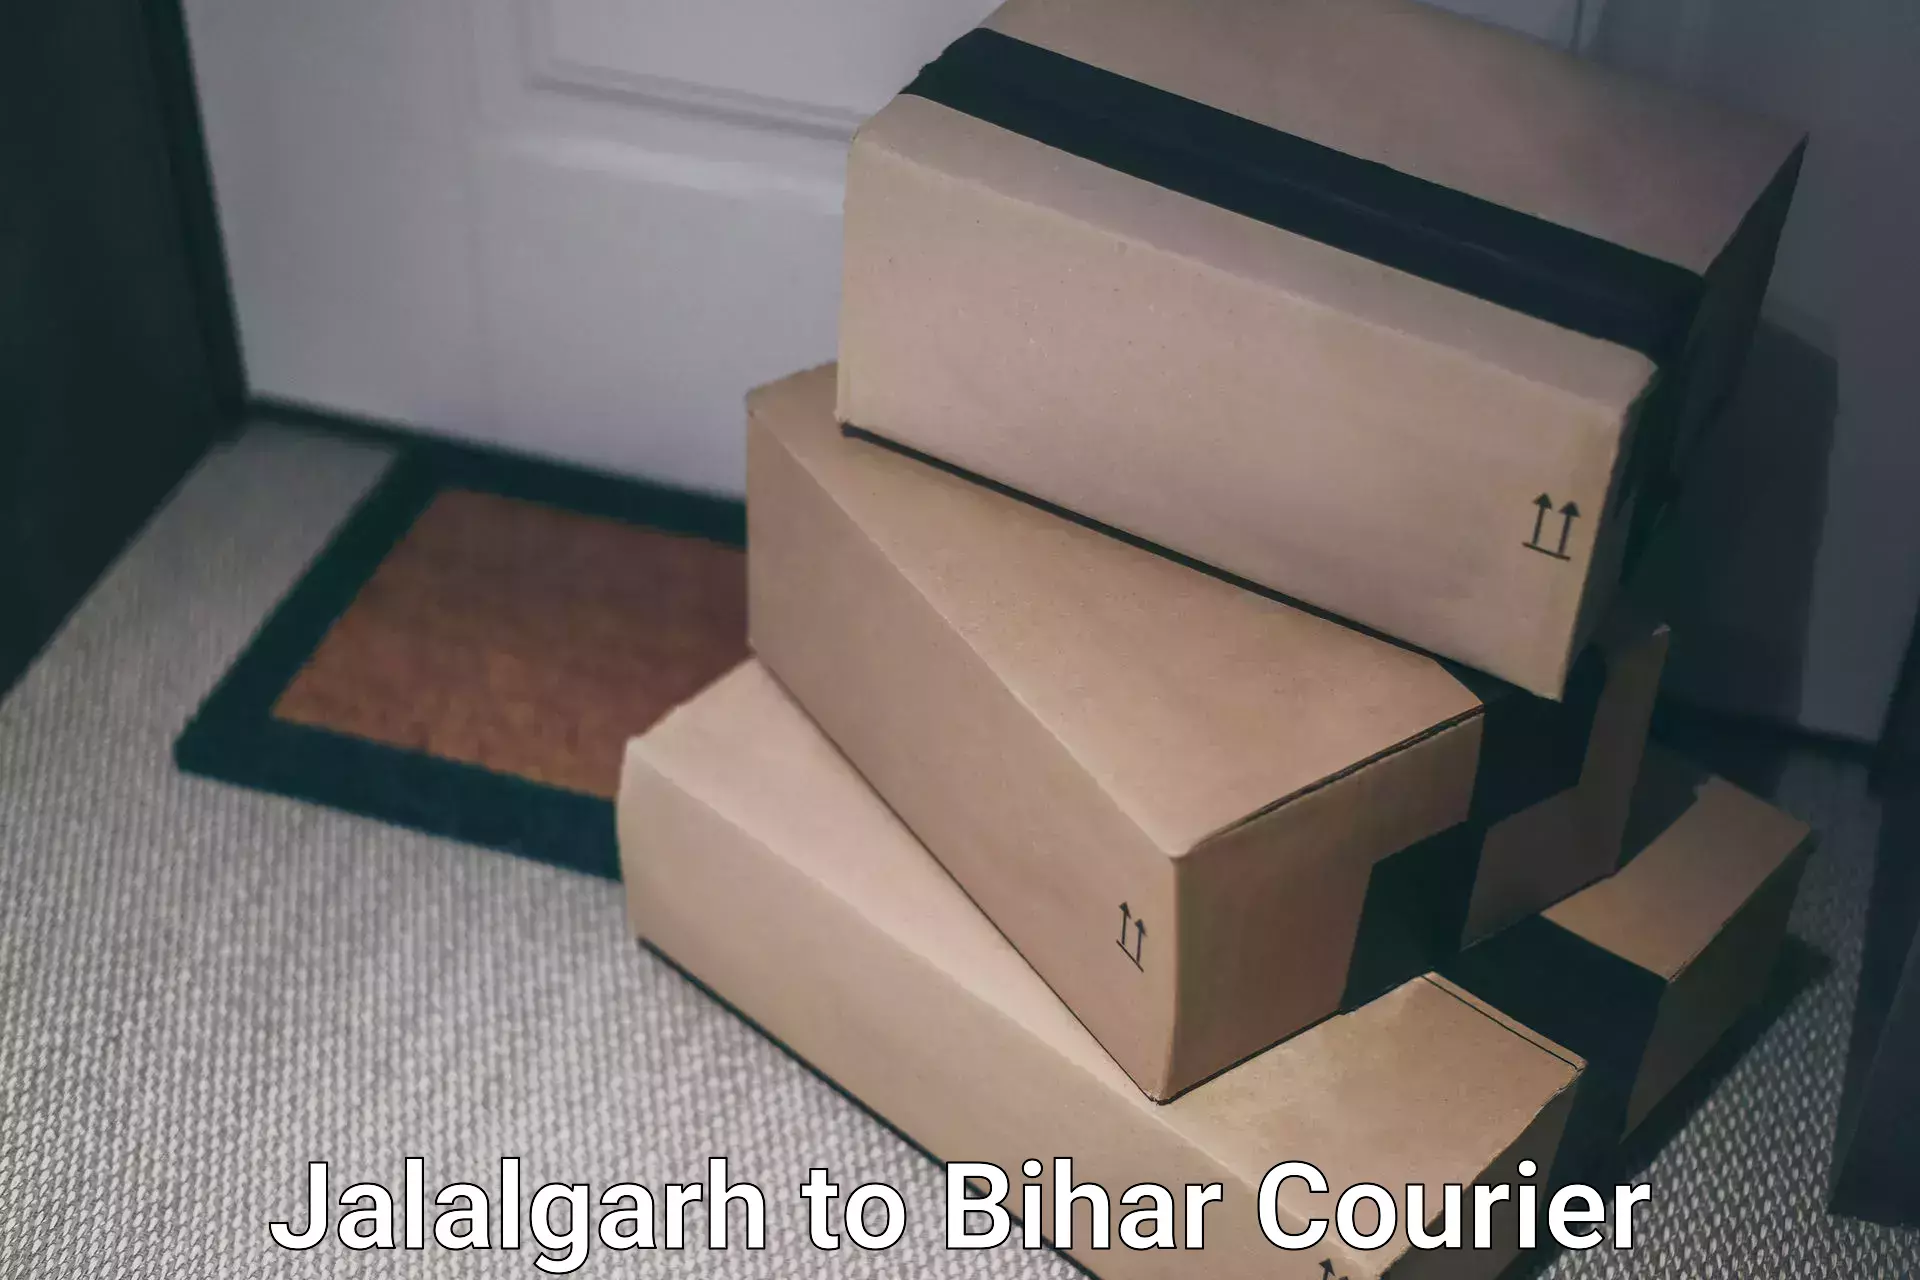 Cargo delivery service Jalalgarh to Bhorey